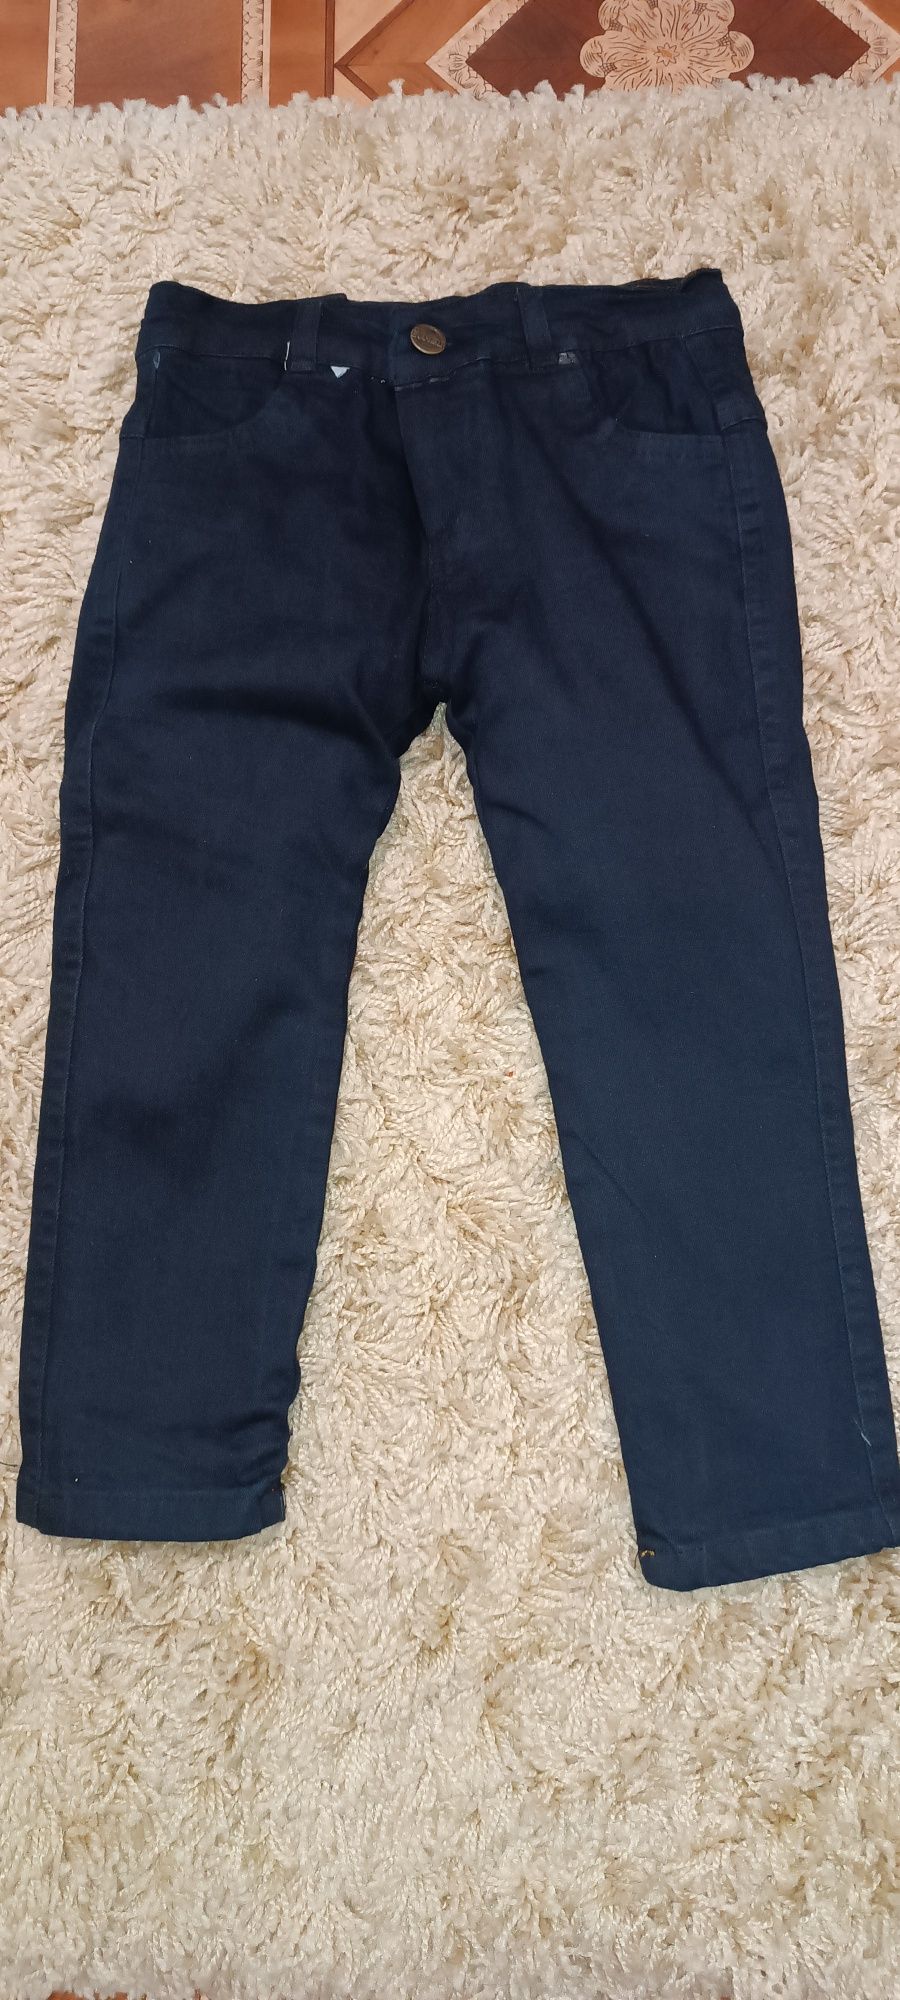 Новые теплые джинсы на мальчика 2-3 года, Турция